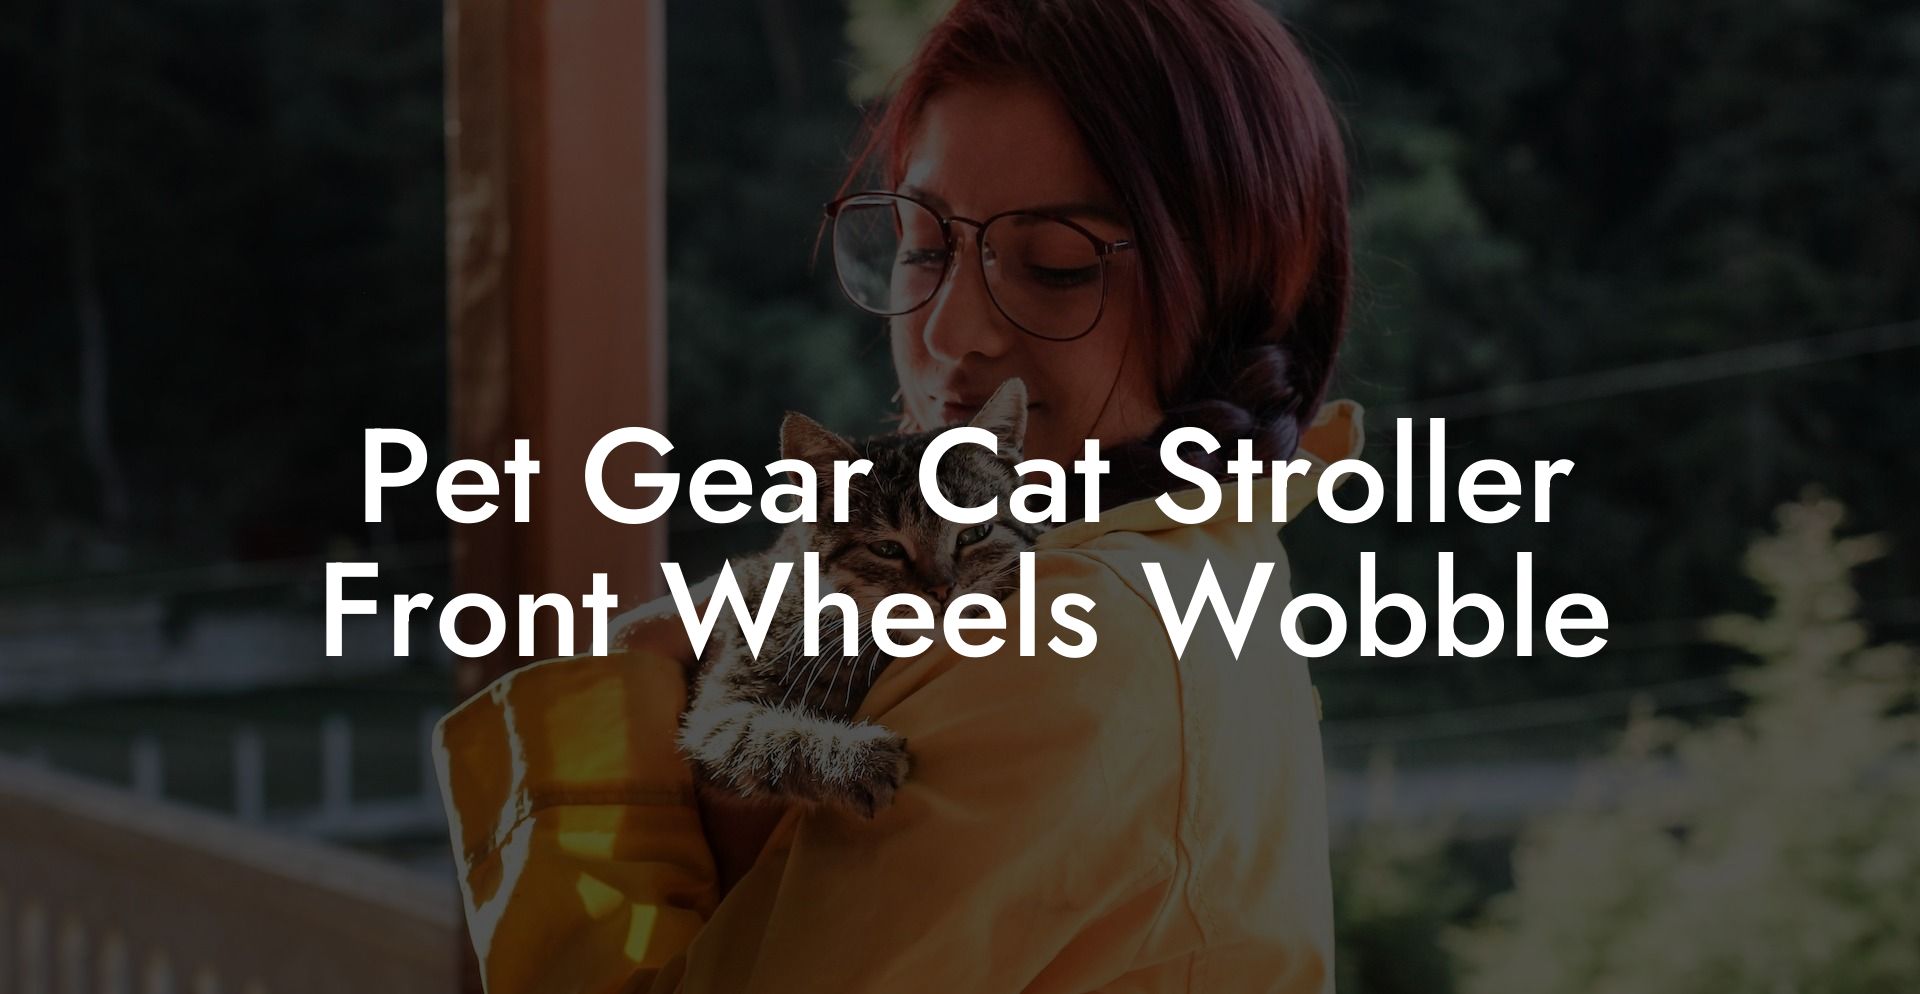 Pet Gear Cat Stroller Front Wheels Wobble